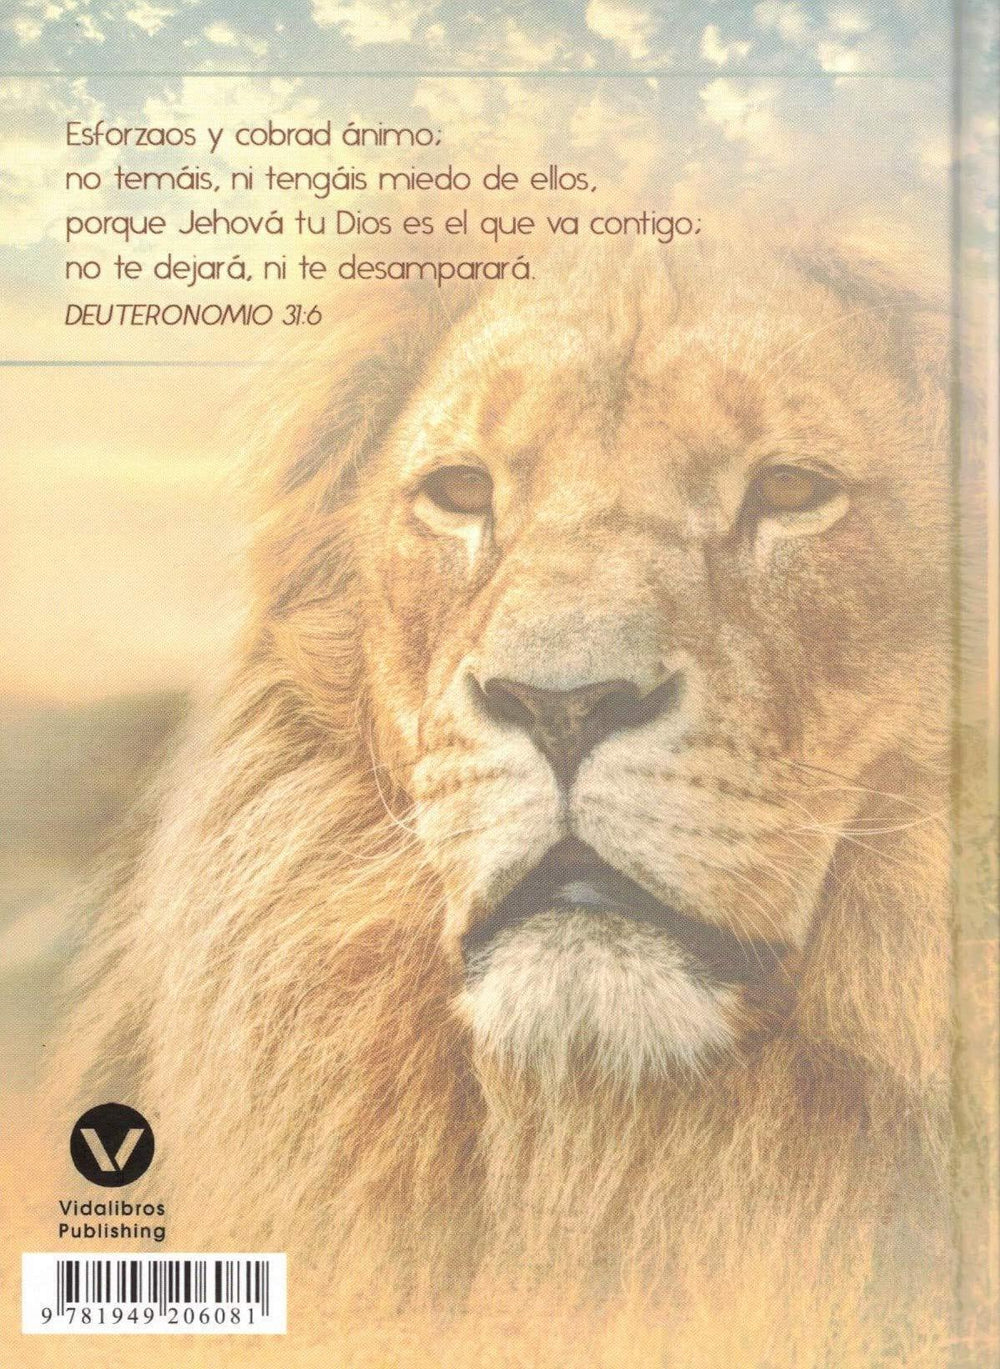 León de la Tribu de Judá - Apocalipsis 5:5 - Diario Y Cuaderno de Notas - Pura Vida Books